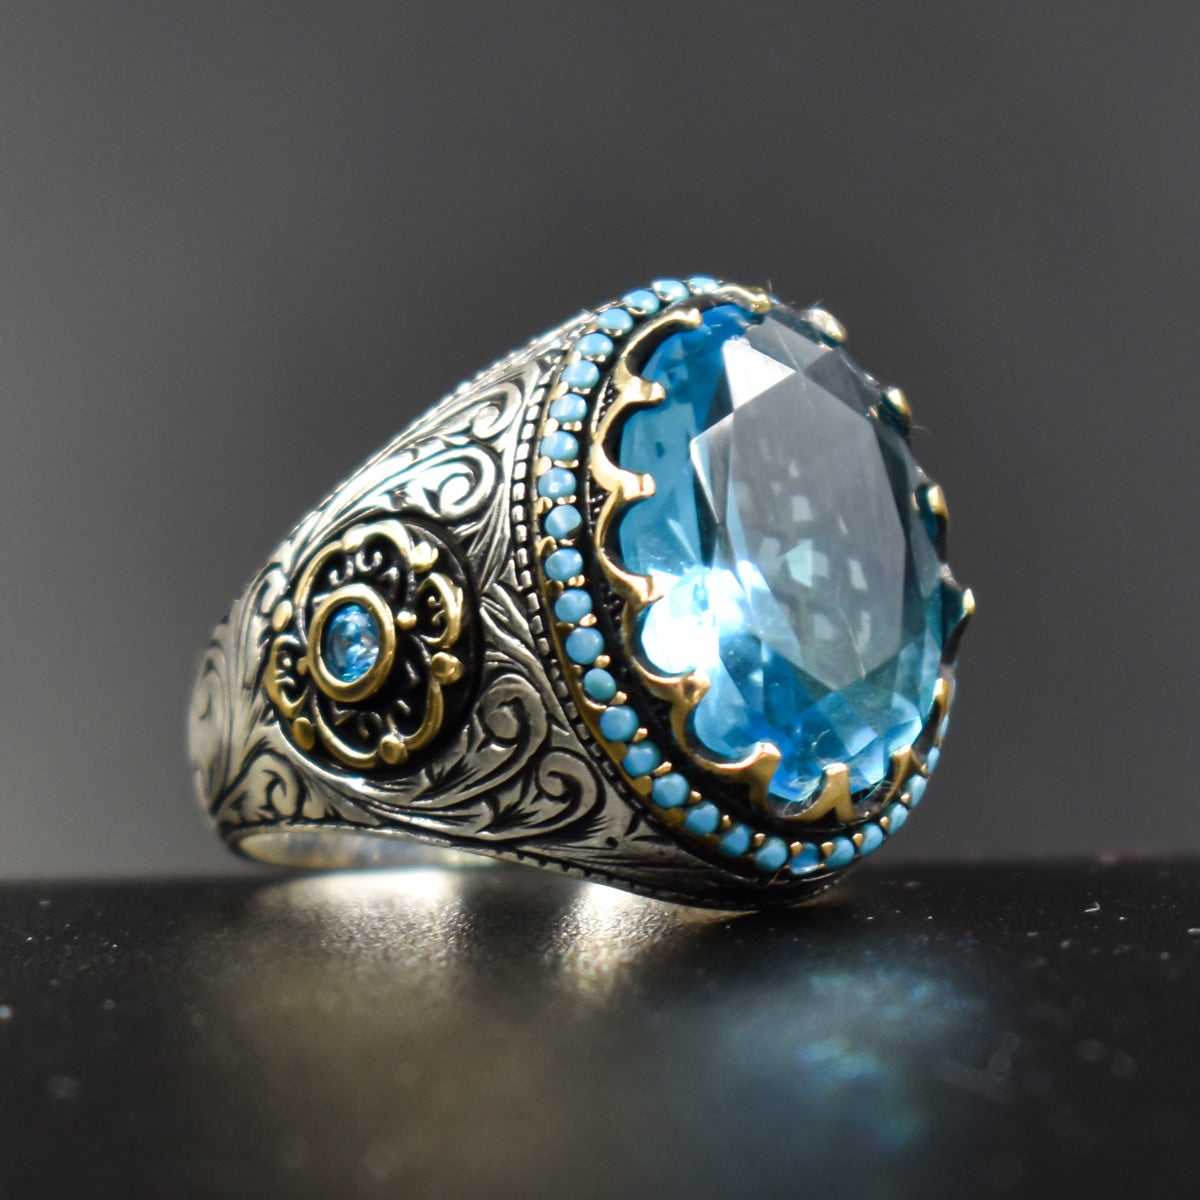 Blue Stone Handmade Ring4Men Silver Ring LMR007 Sterling 925 –